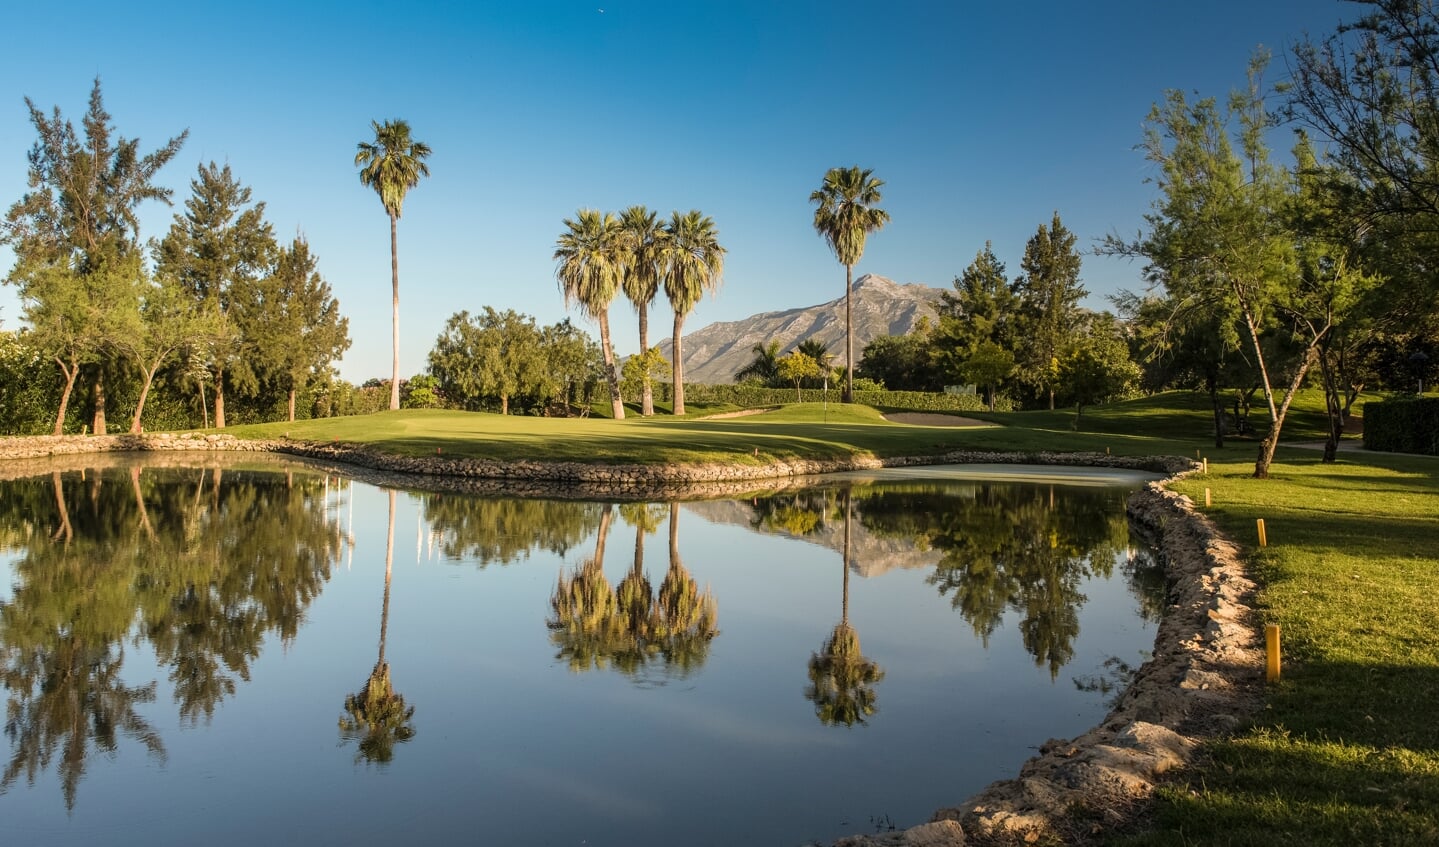 De golfbaan La Quinta, met drie prachtige lussen een garantie voor speelplezier.